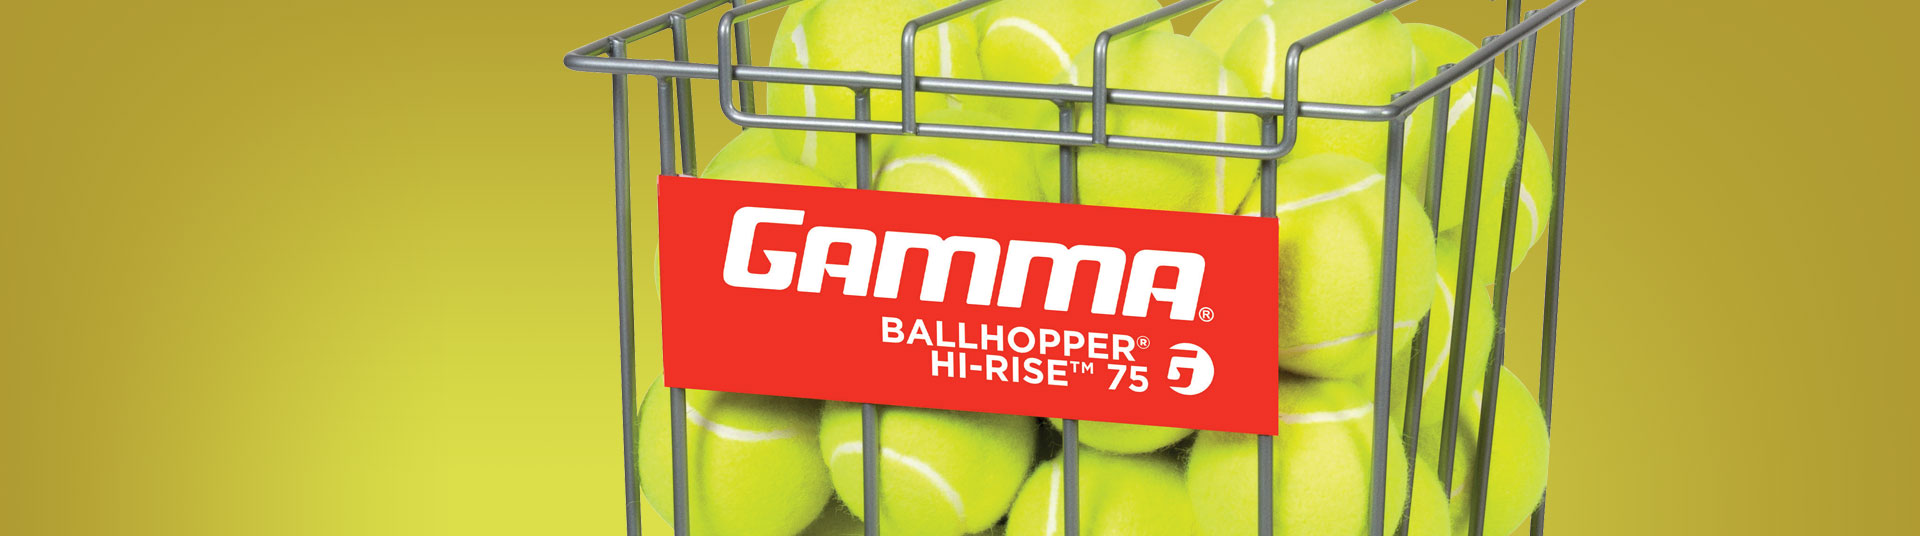 Gamma Ballhopper Risette 50 Tennis Ballkorb Silber NEU 